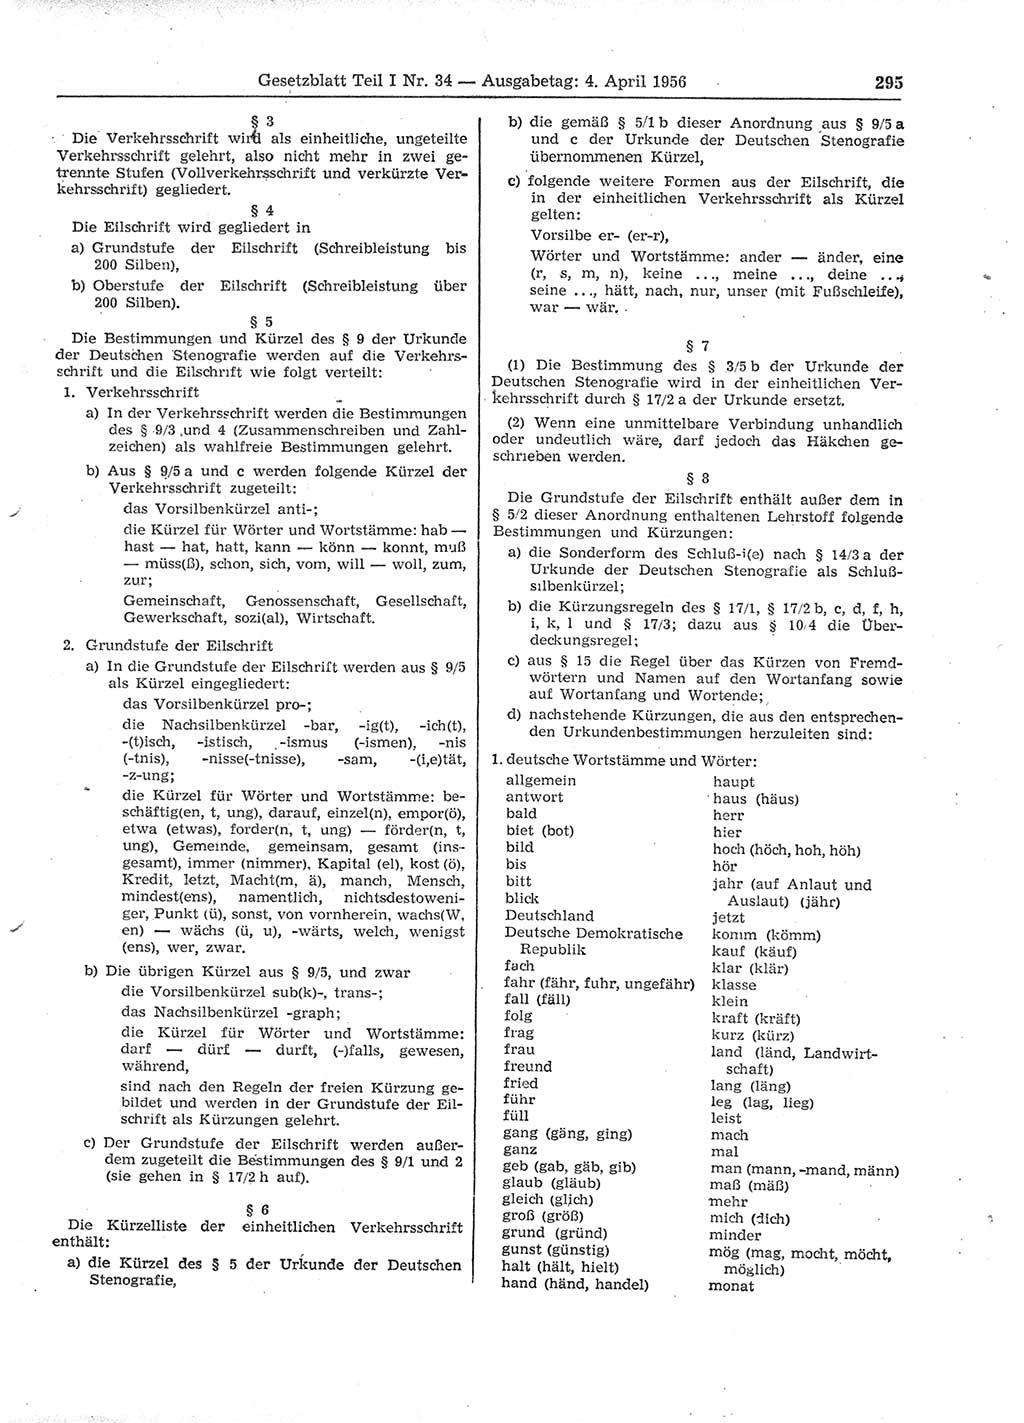 Gesetzblatt (GBl.) der Deutschen Demokratischen Republik (DDR) Teil Ⅰ 1956, Seite 295 (GBl. DDR Ⅰ 1956, S. 295)